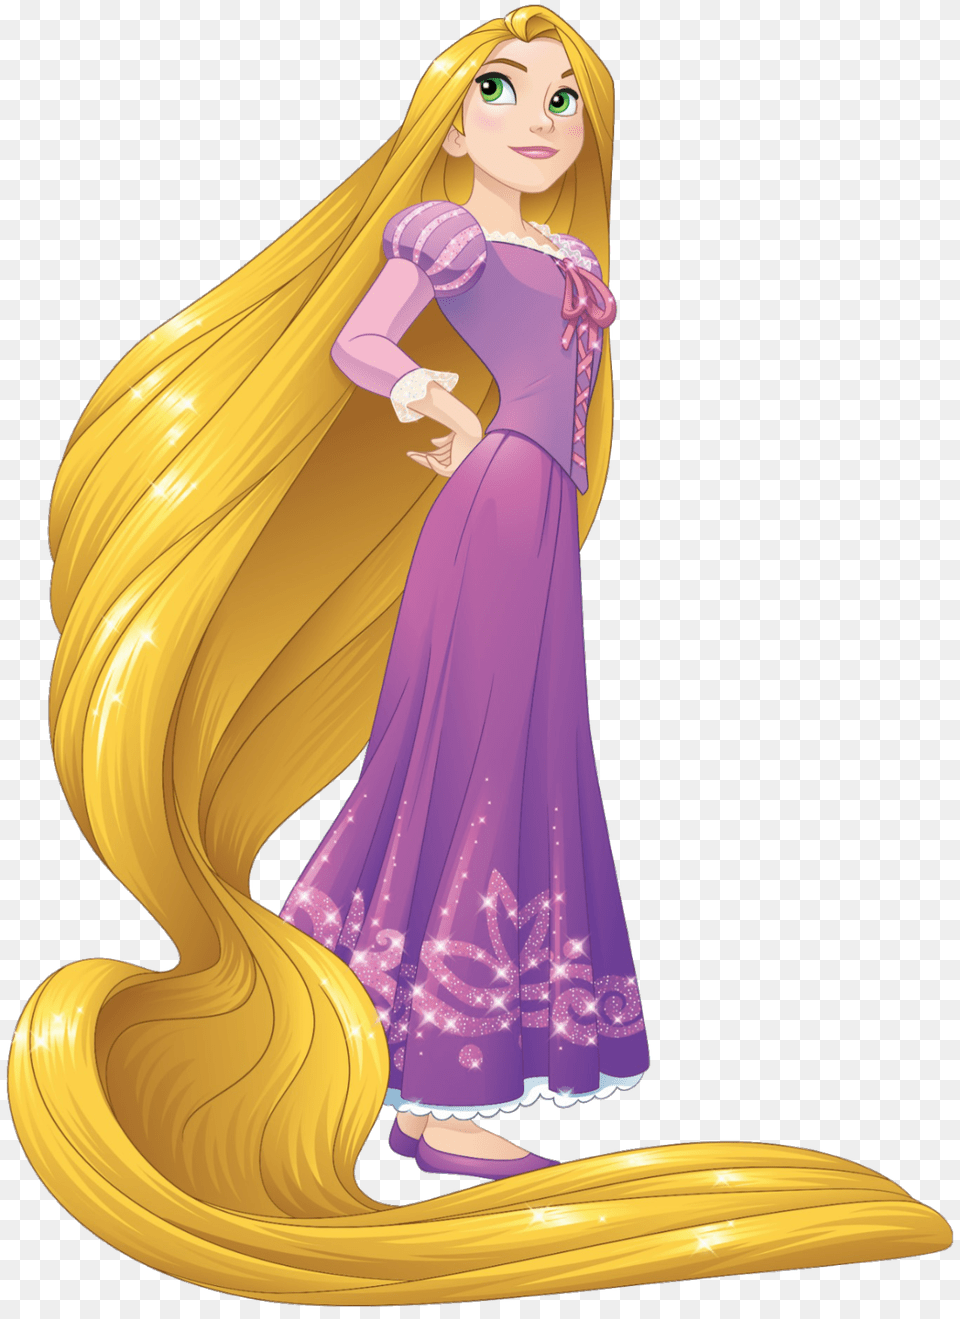 Rapunzel Hair Transparent Clipart Princess Rapunzel, Adult, Person, Woman, Female Free Png